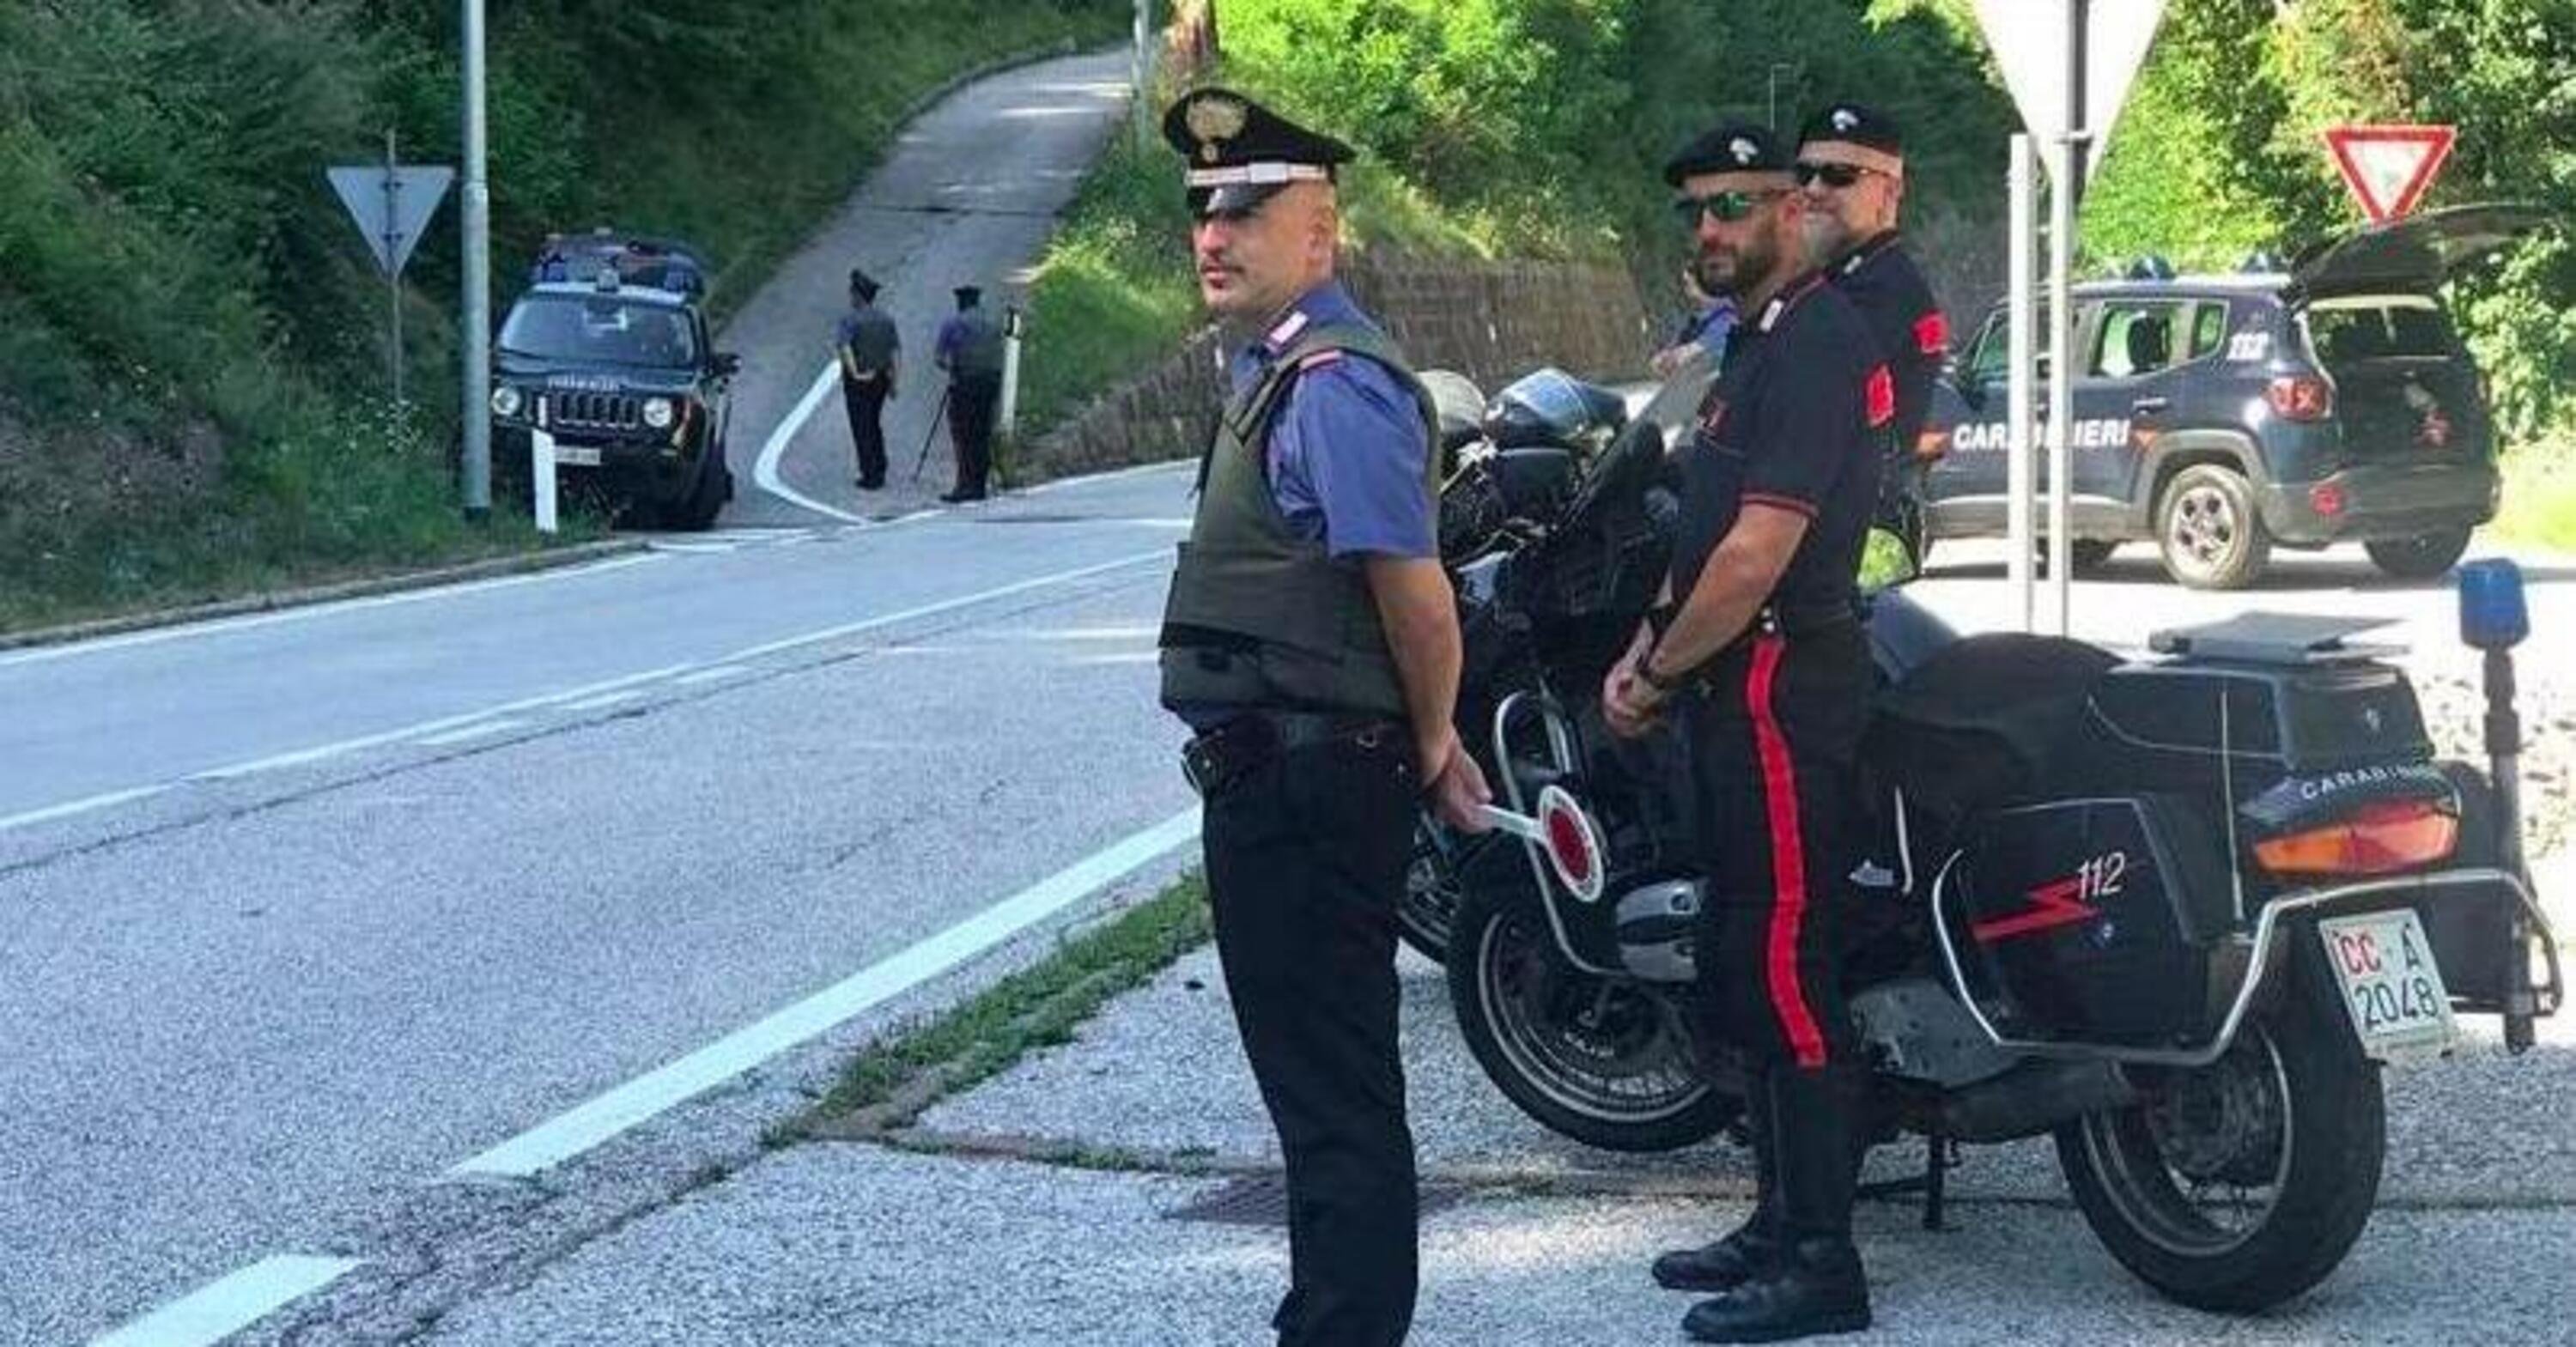 Multe, in Trentino oltre 300 motociclisti sanzionati in quattro mesi: 1 su 10 &egrave; fuori regola